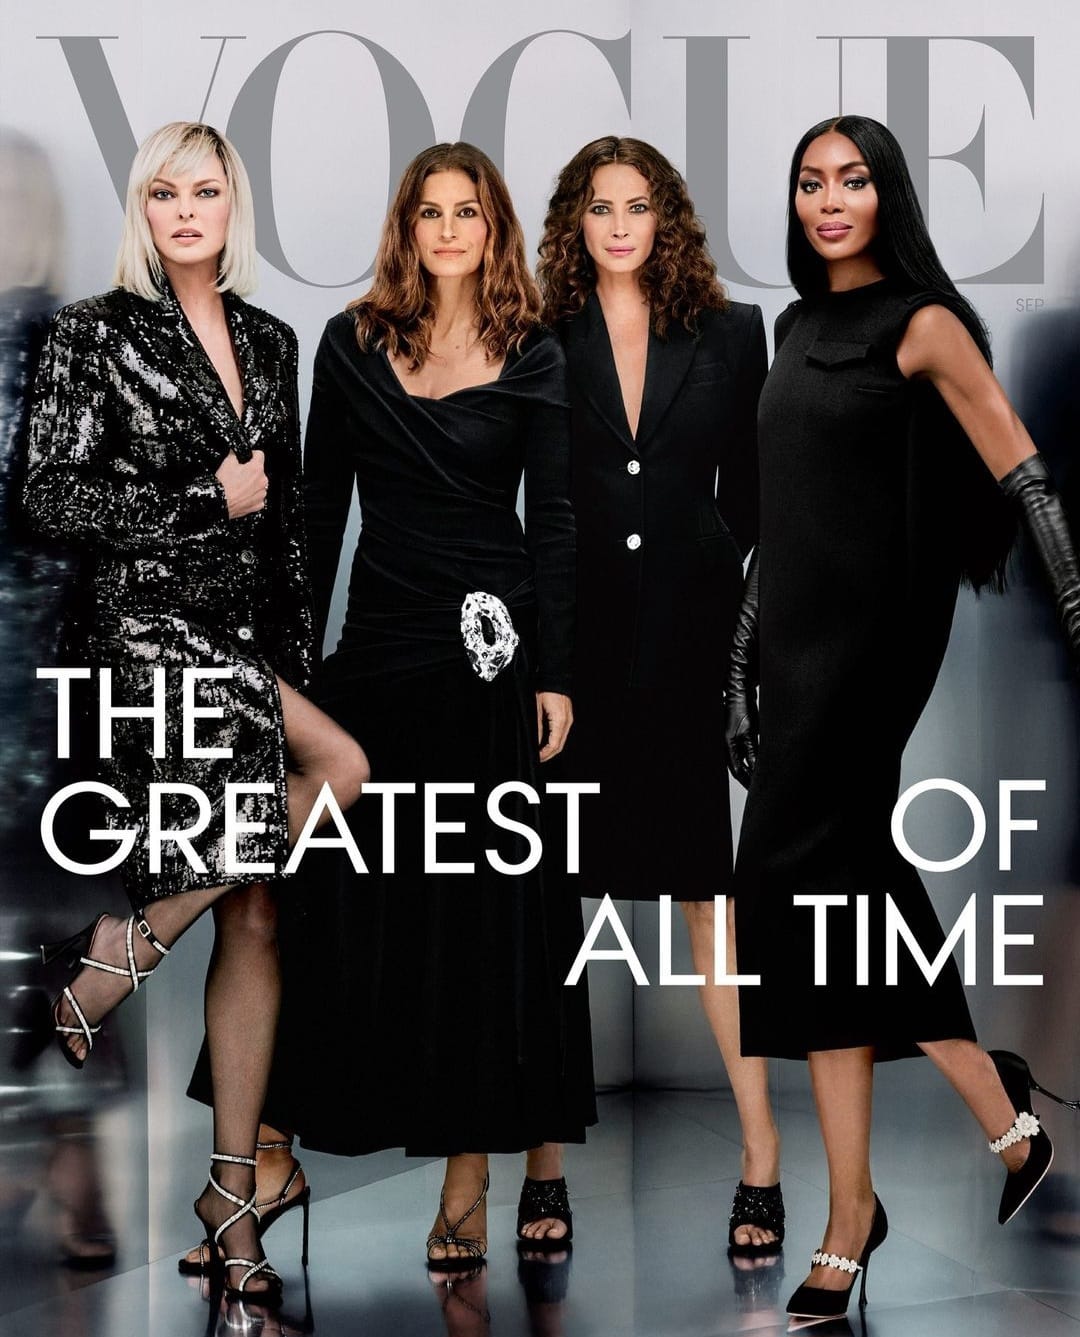 Vogue coloca quatro supermodelos na capa